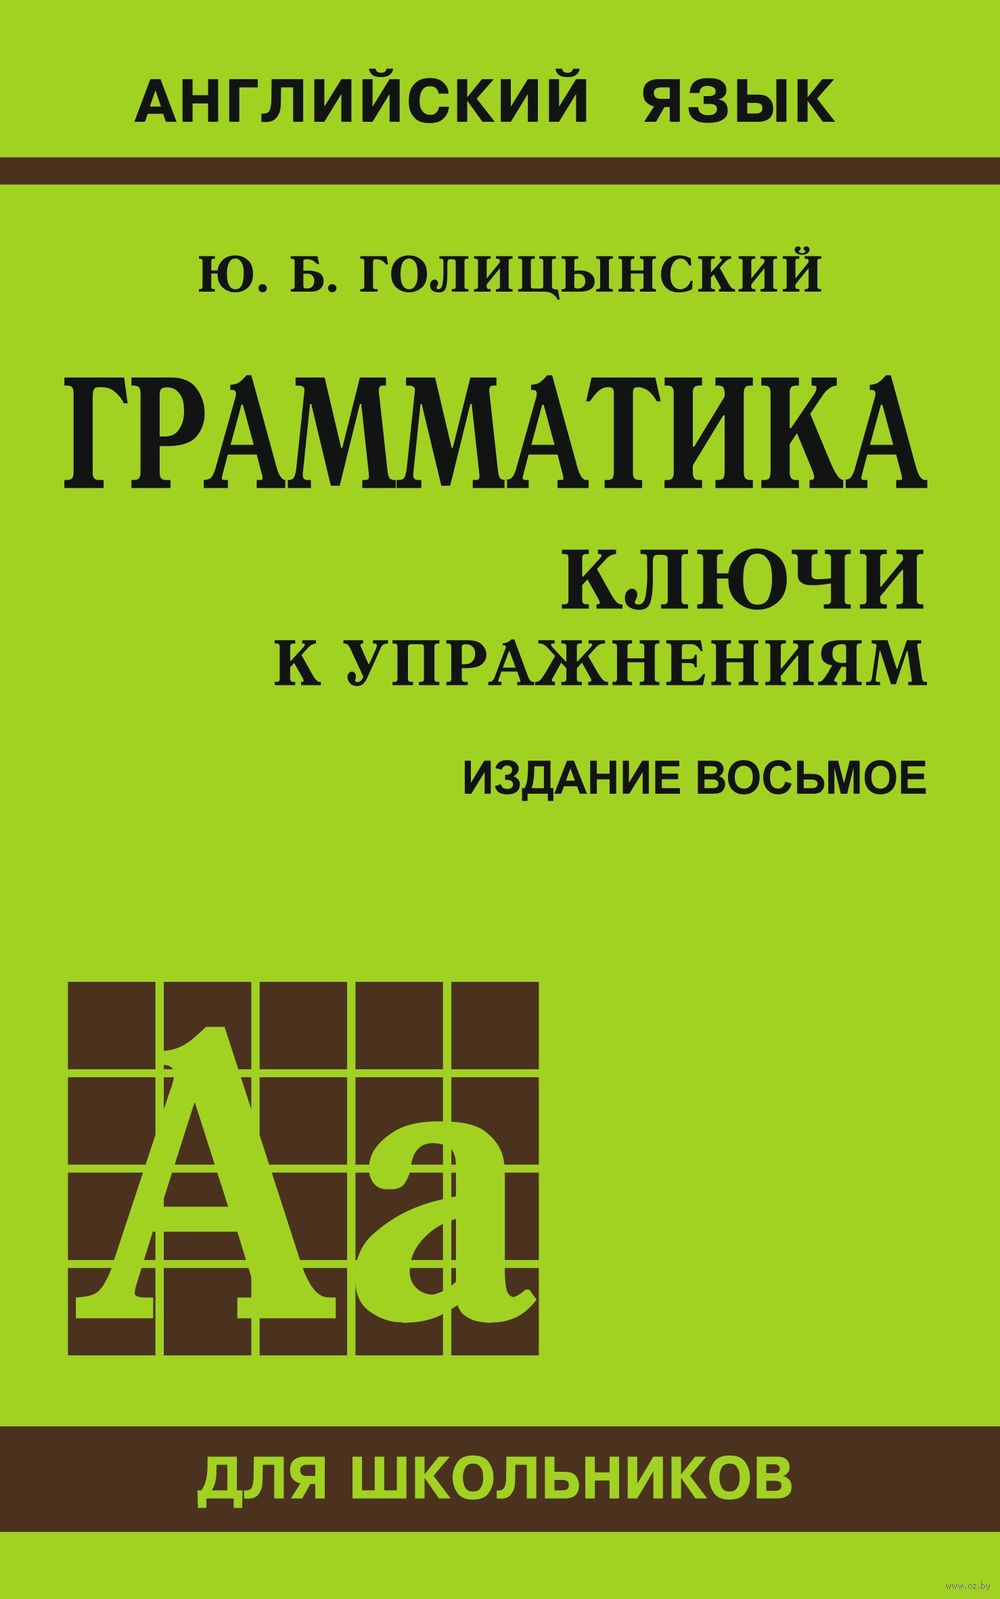 Голицынский грамматика решебник 6 издание издательство каро